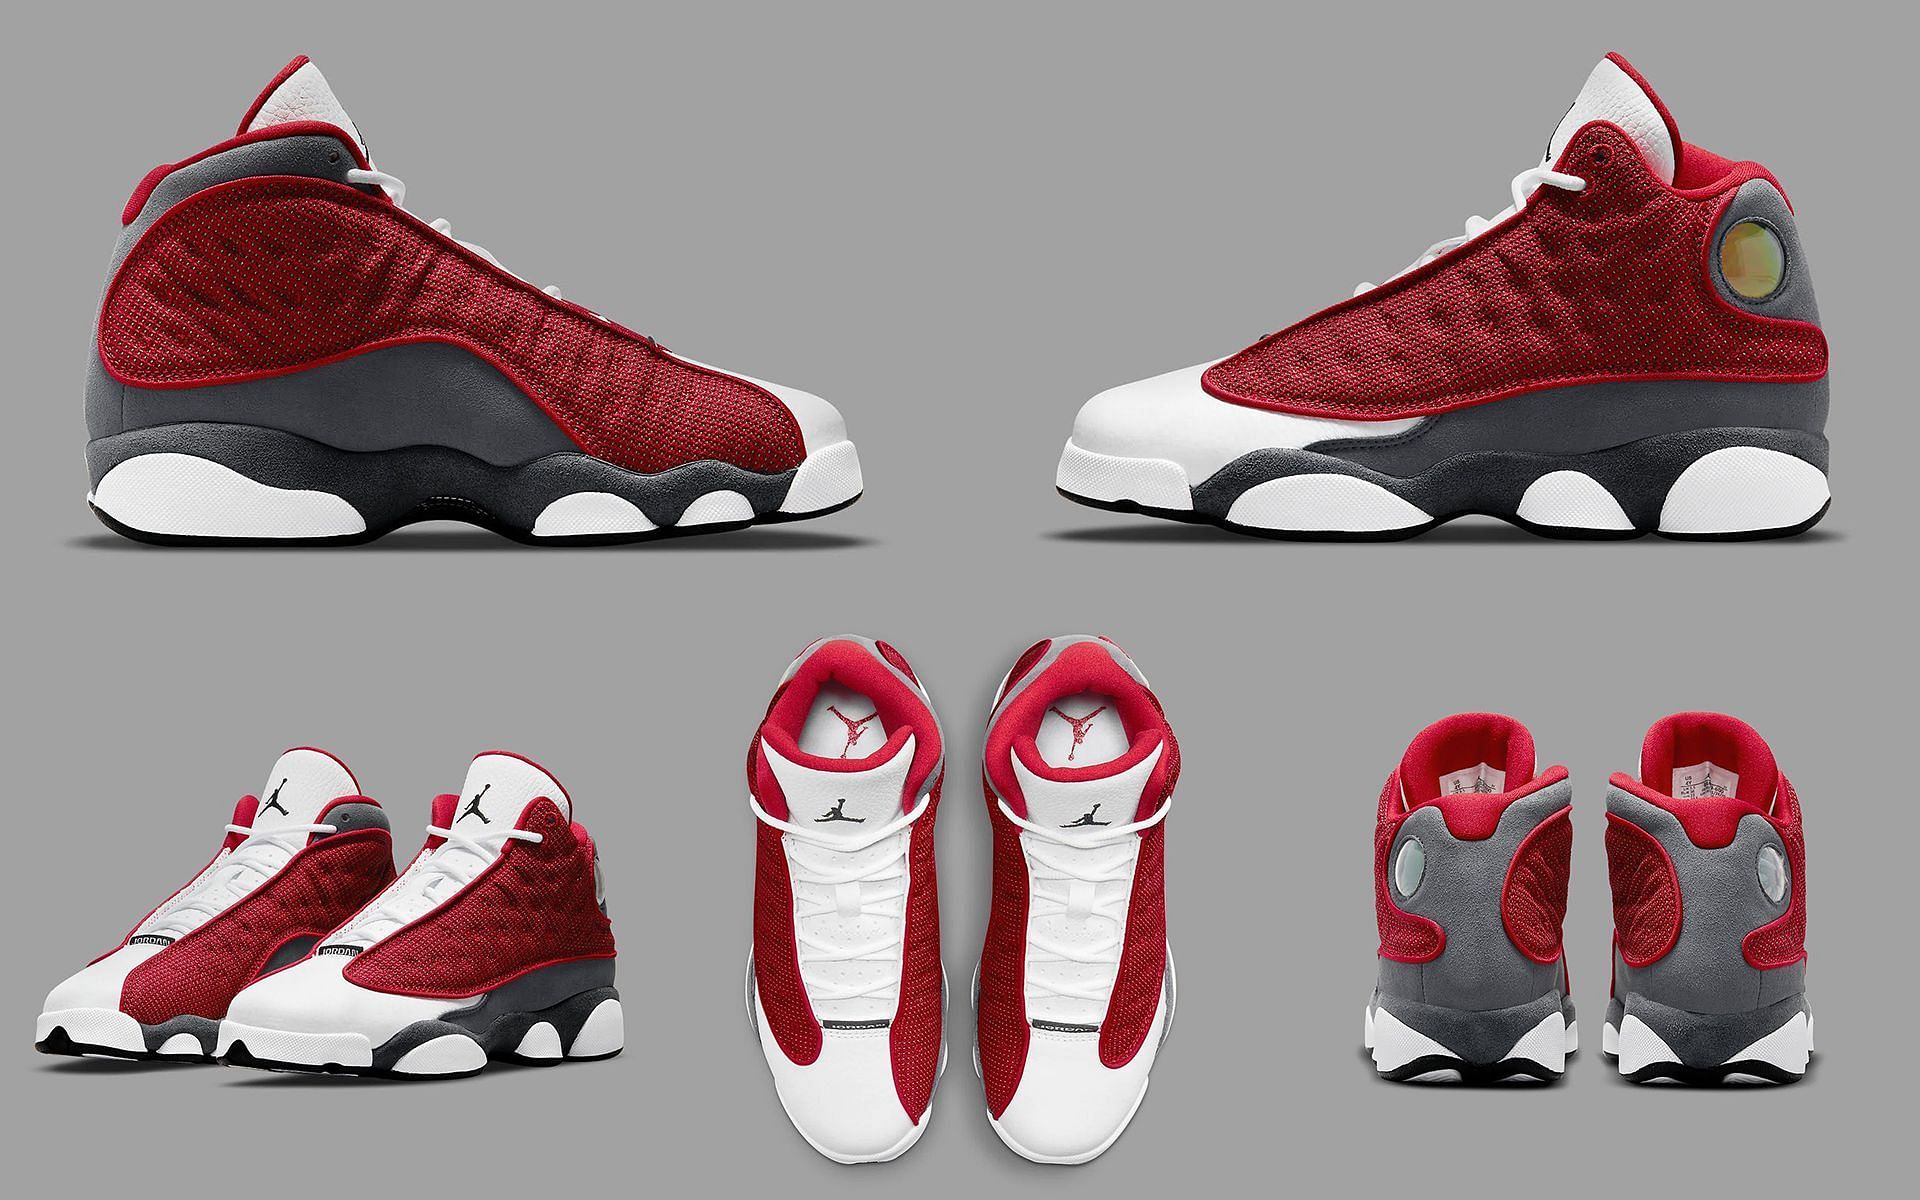 Take a detailed look at the AJ13 Red Flint sneakers (Image via Sportskeeda)